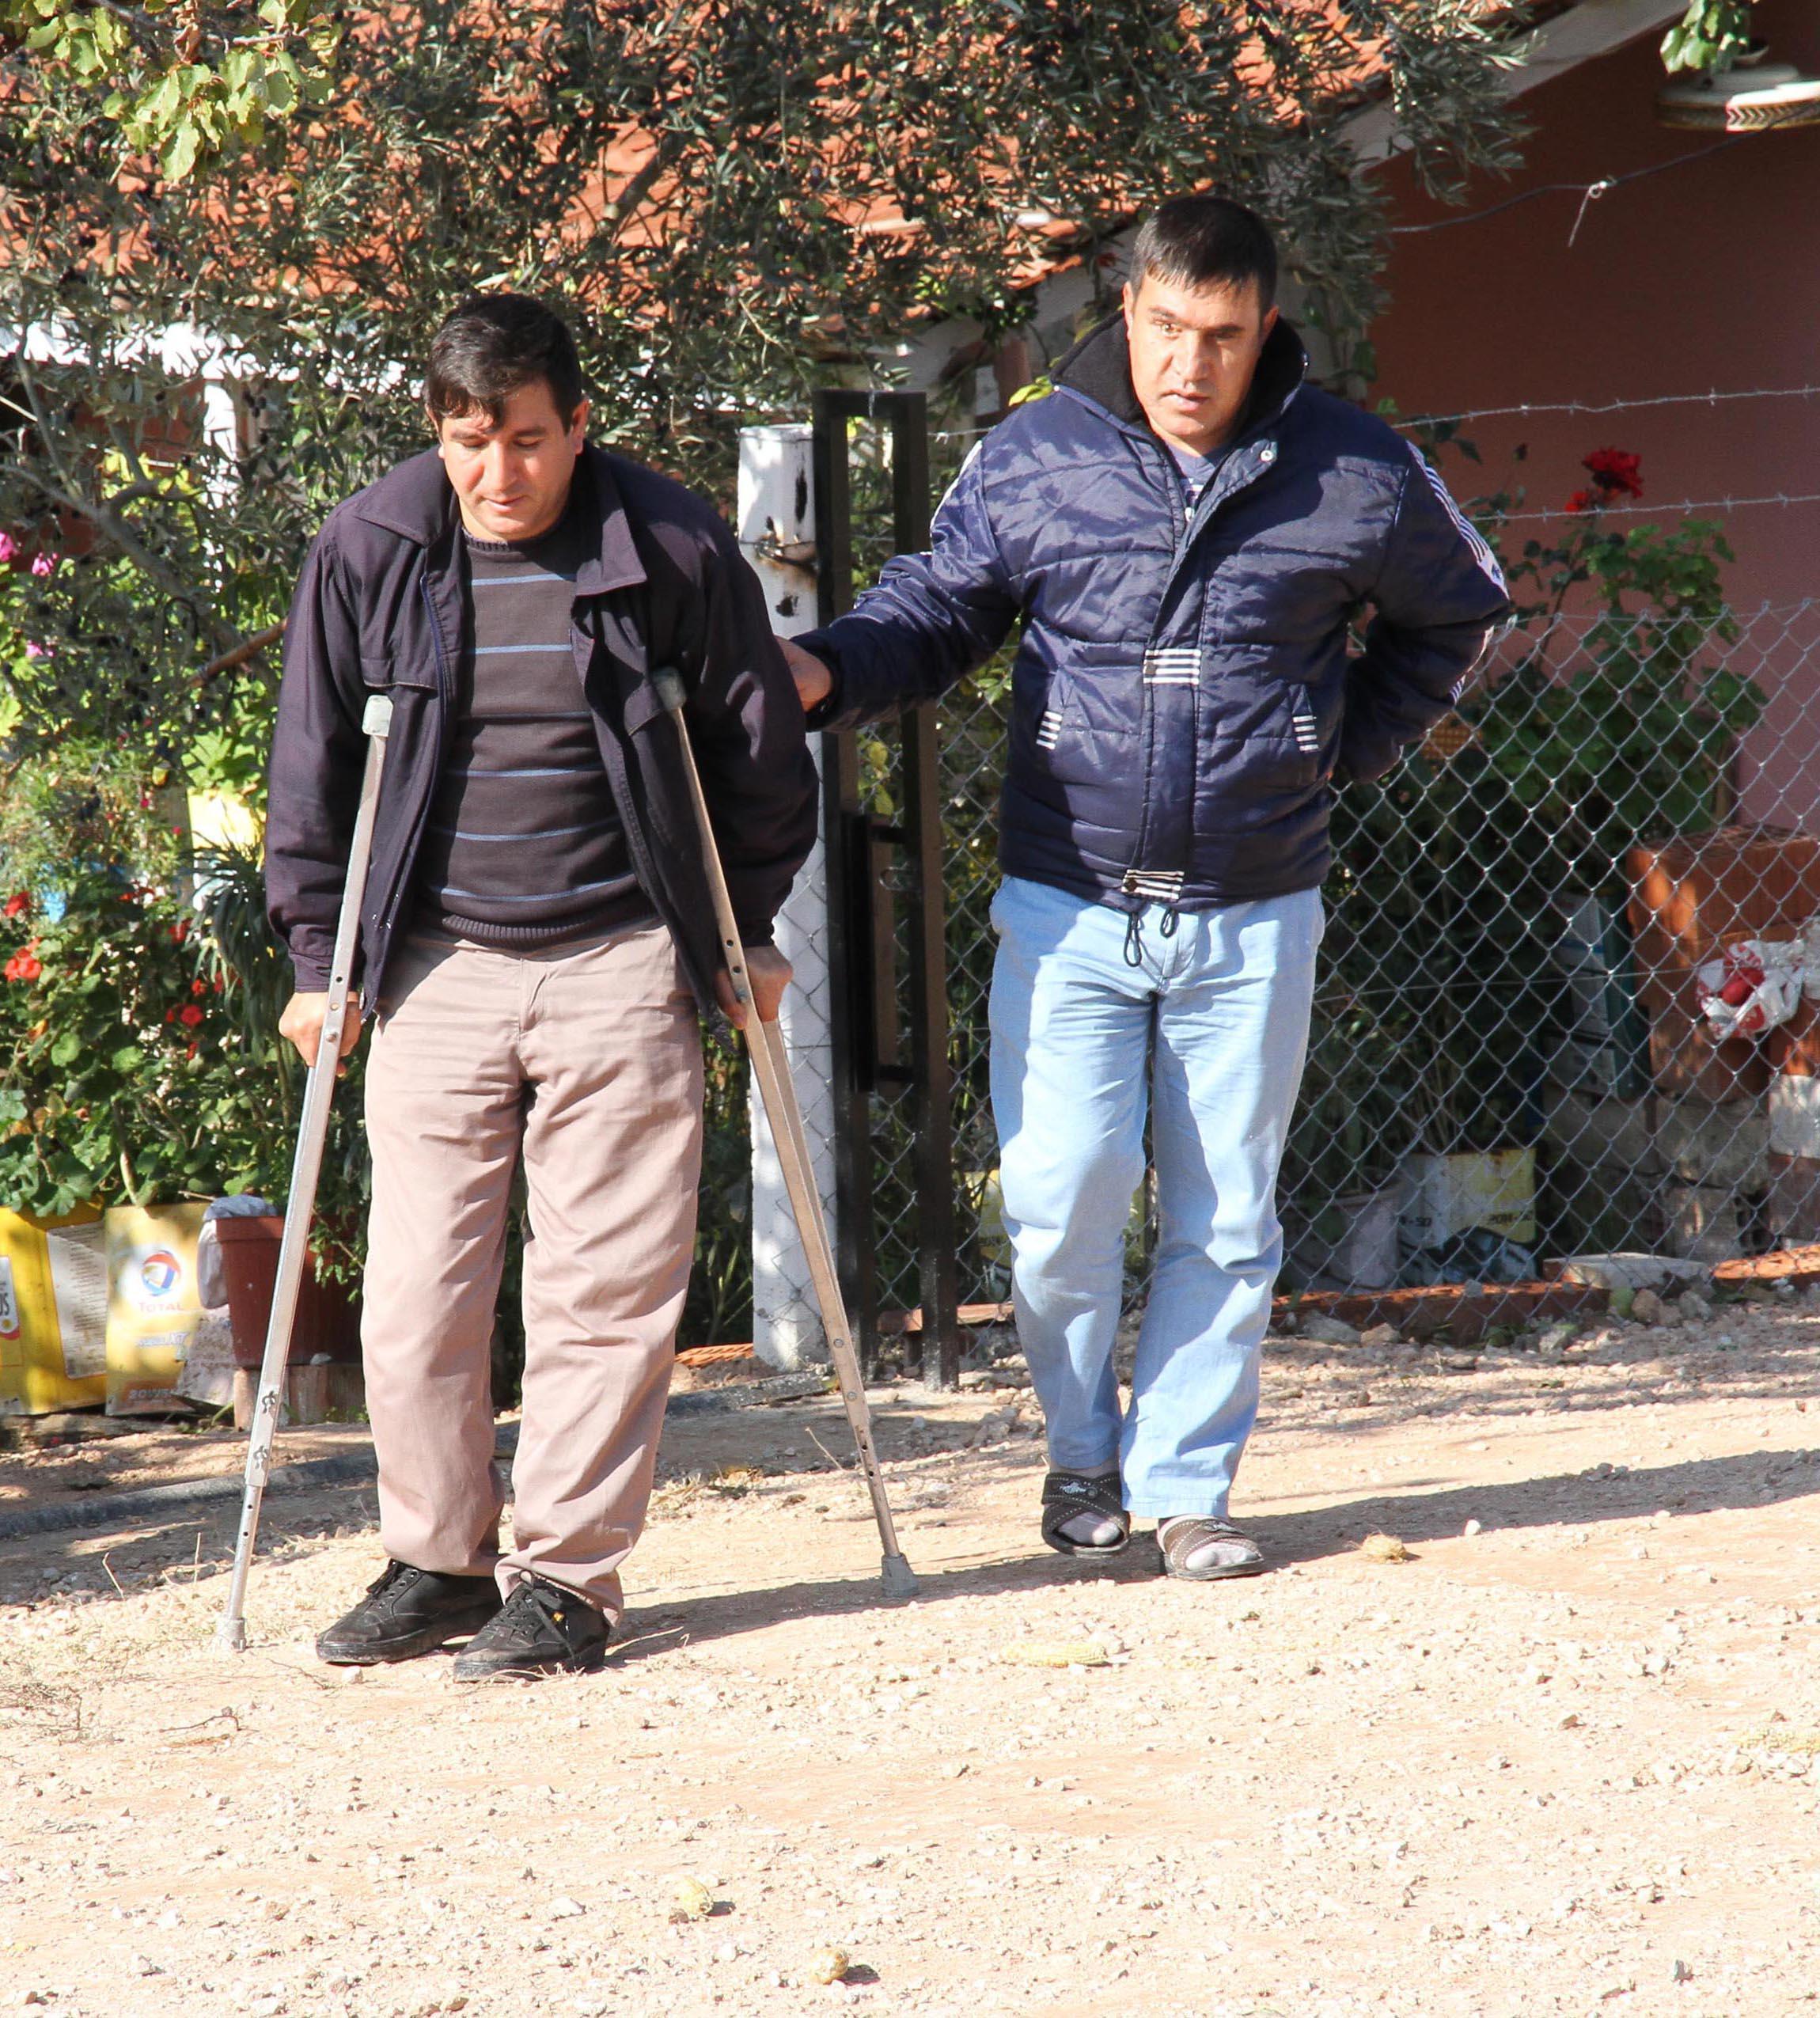 Maden kazasında biri ayaklarını diğeri gözlerini kaybetti Tazminat yılan hikayesine döndü